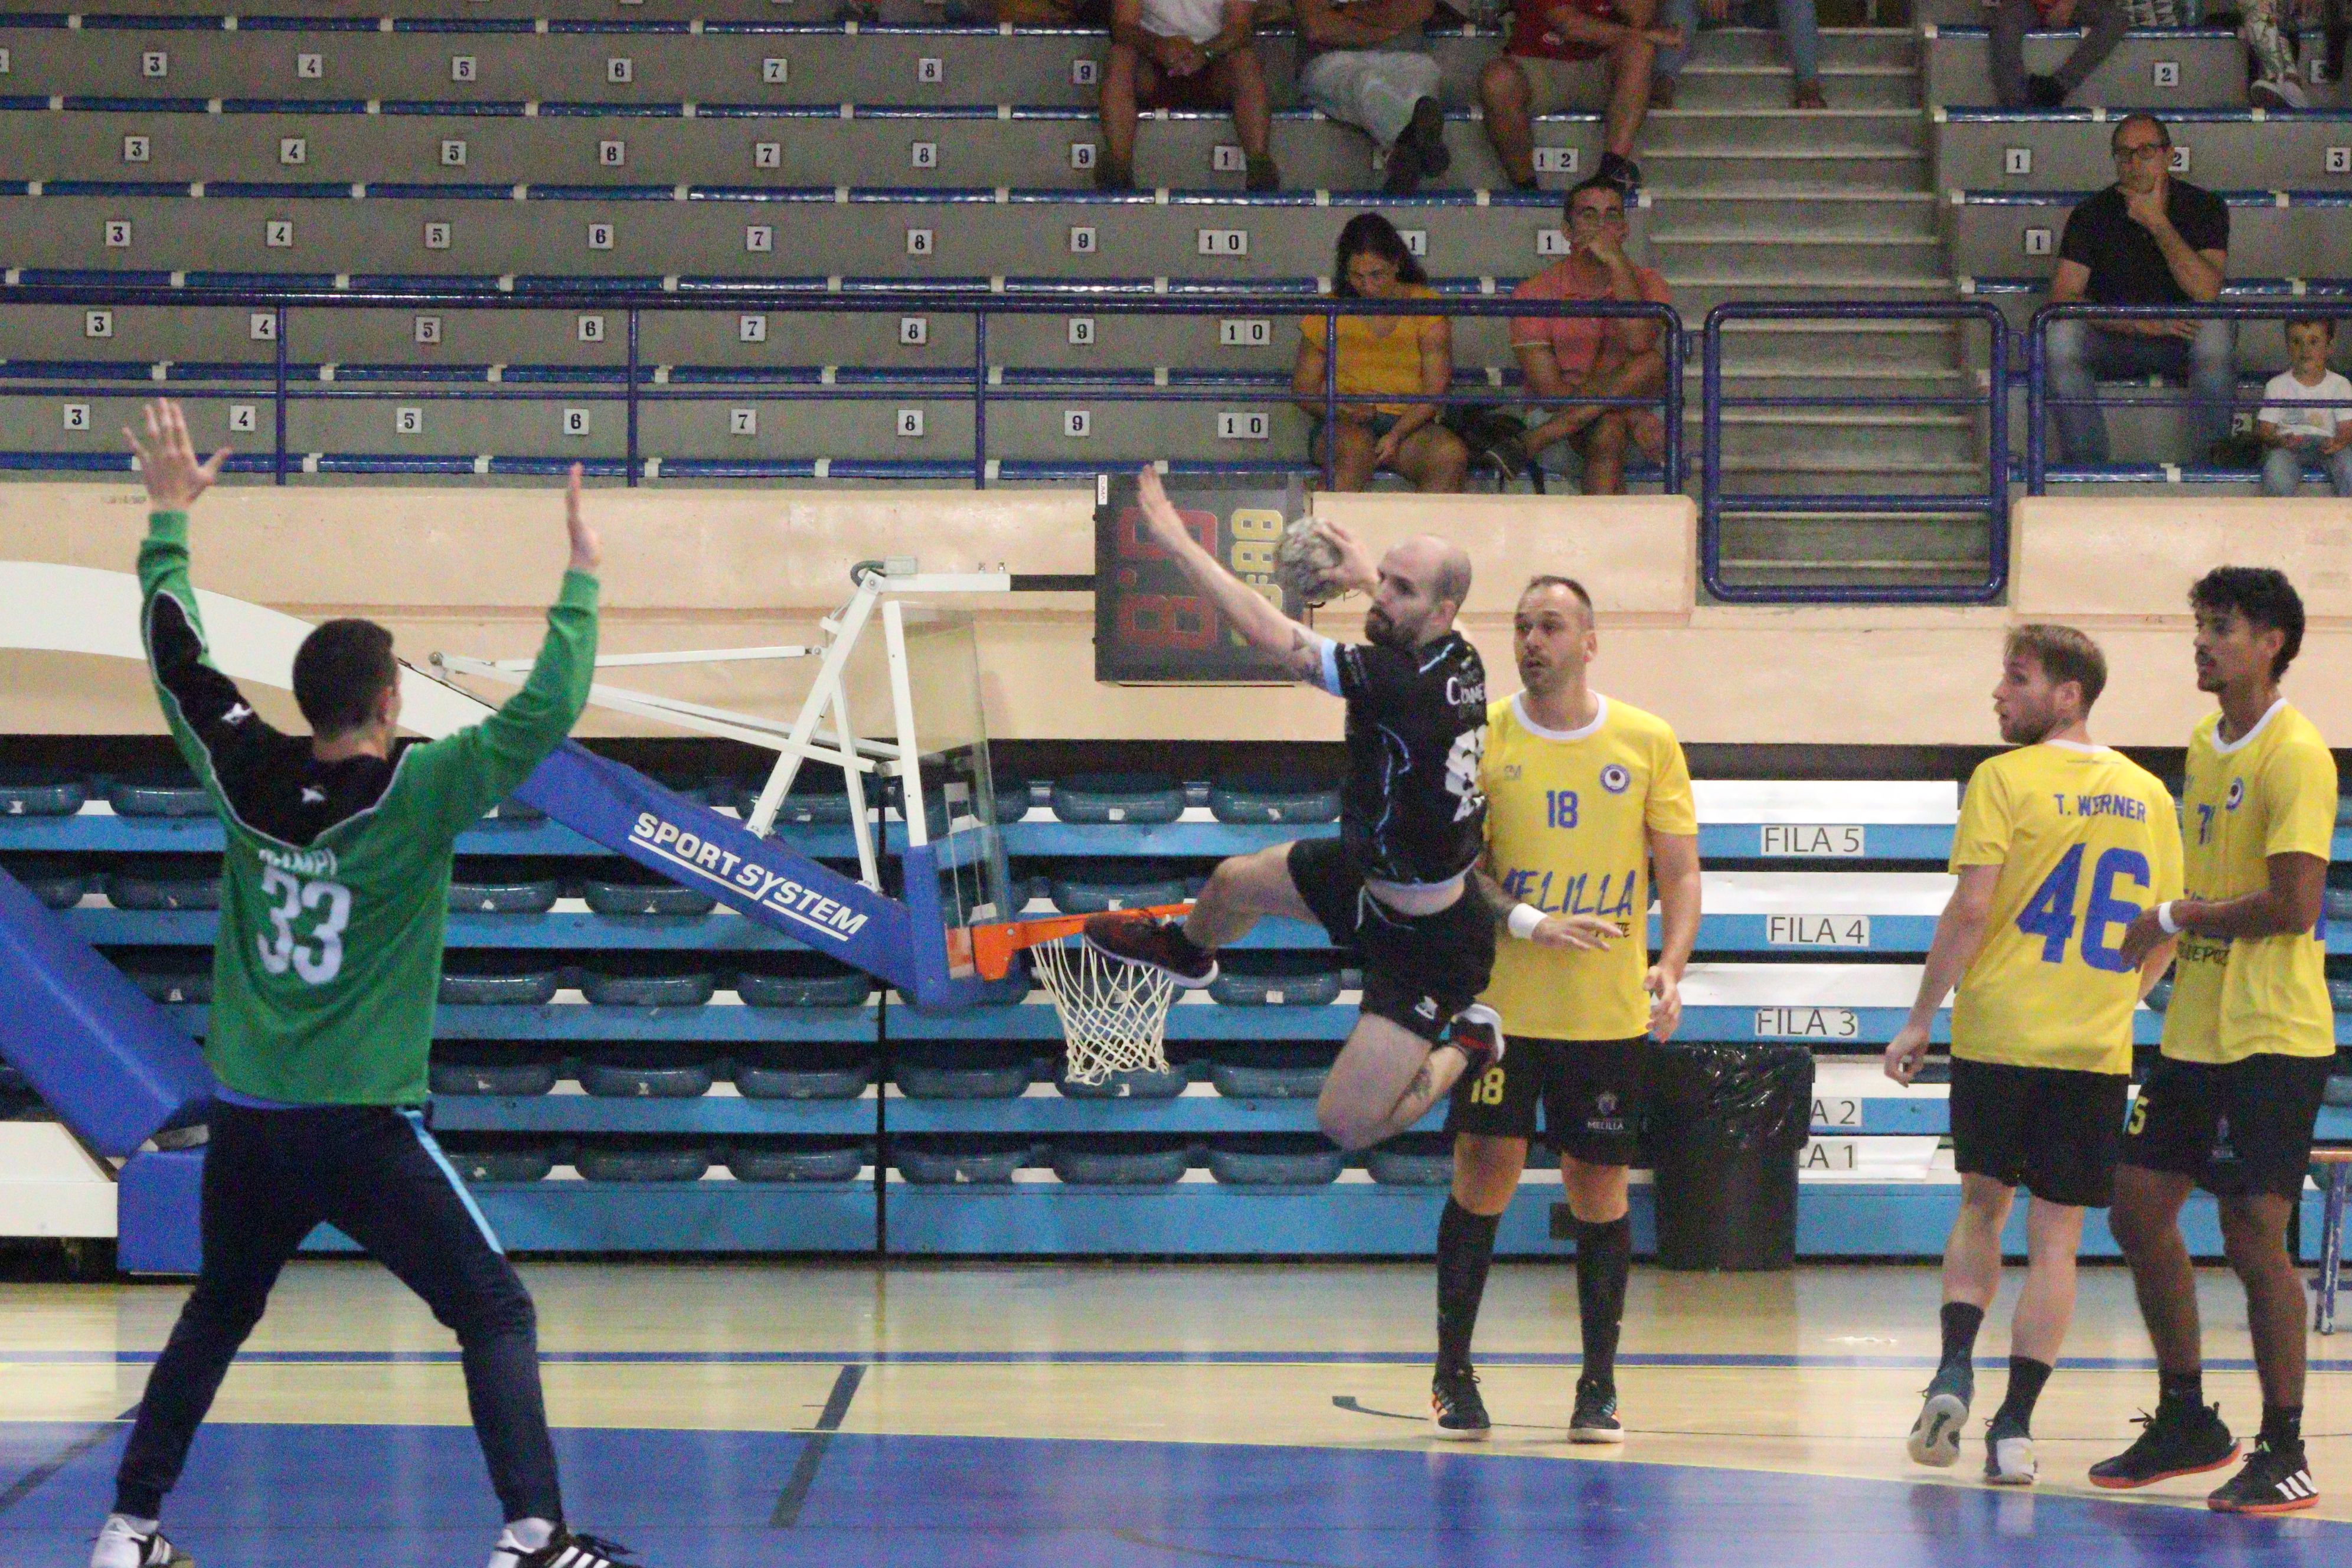 El jugador del BM Ciudad de Algeciras, Ángel Verdú, salta para tratar de marcar en la portería del Melilla/Foto: Axel S.C.